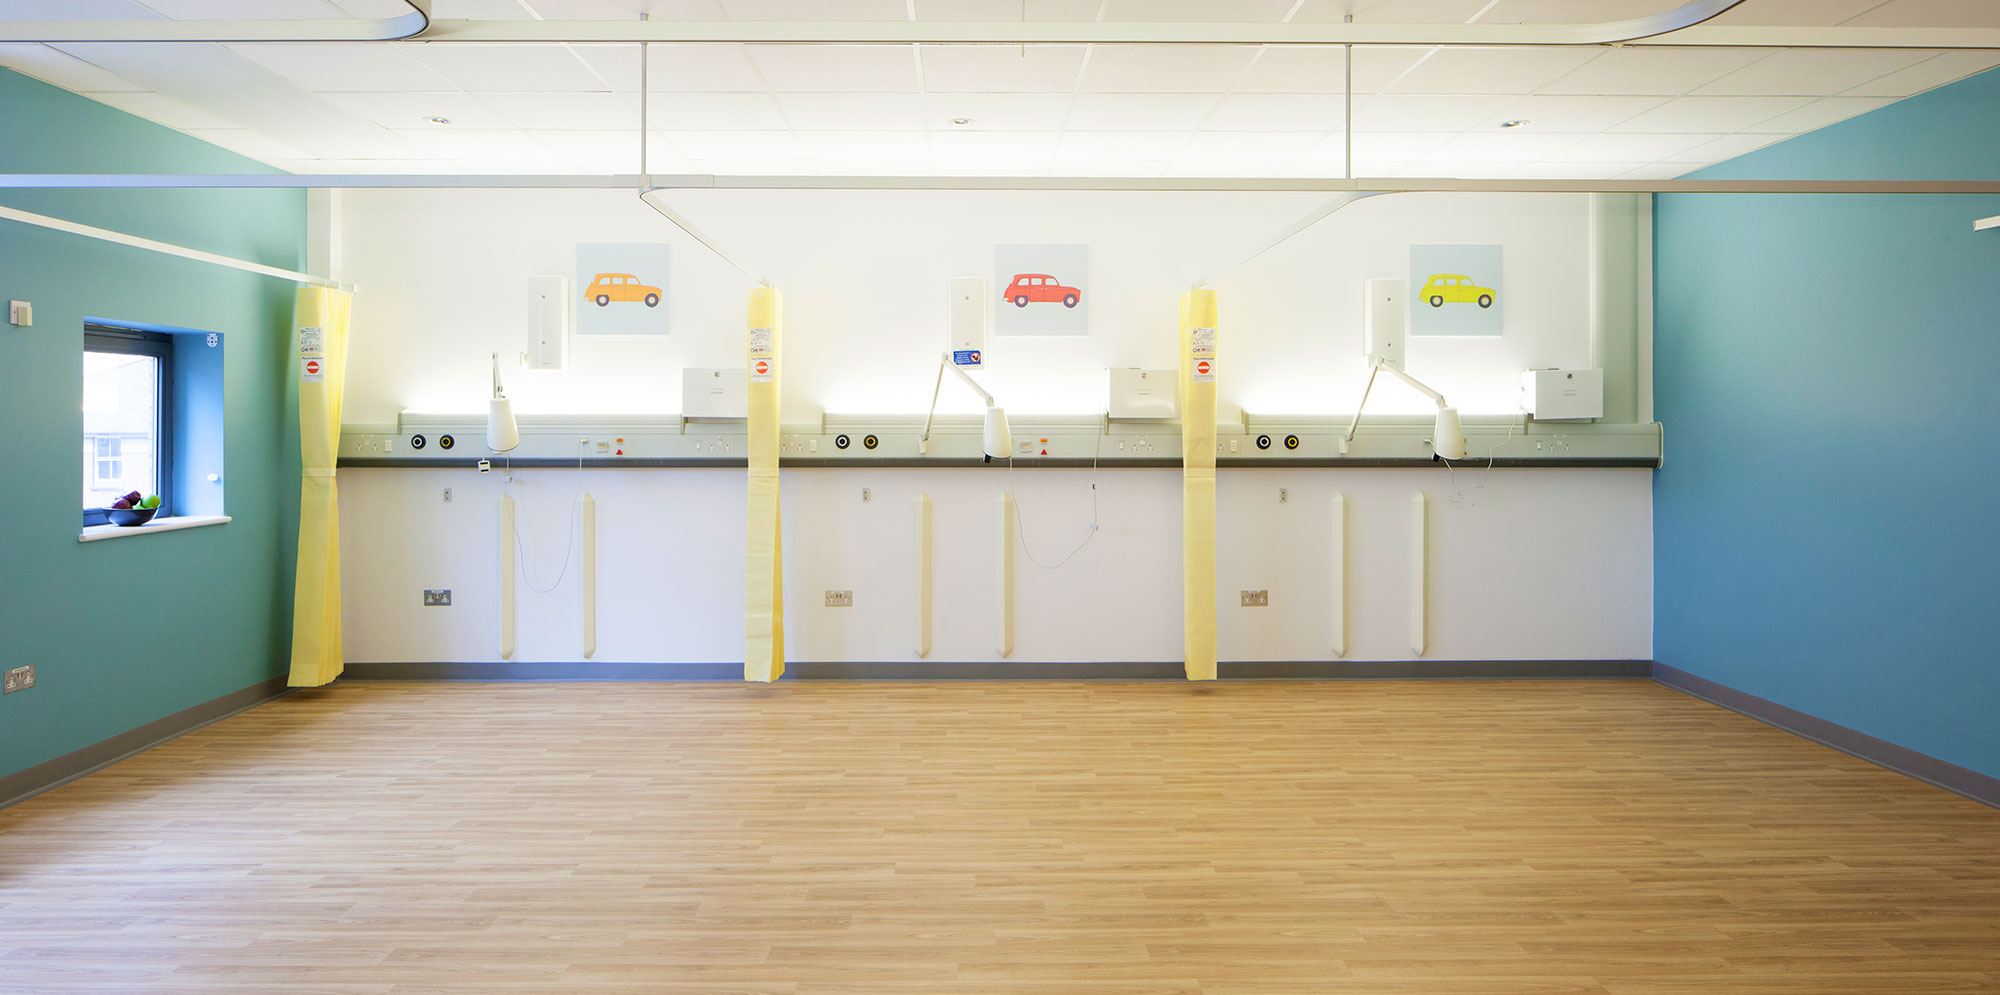 Paediatric room inside Croydon University hospital